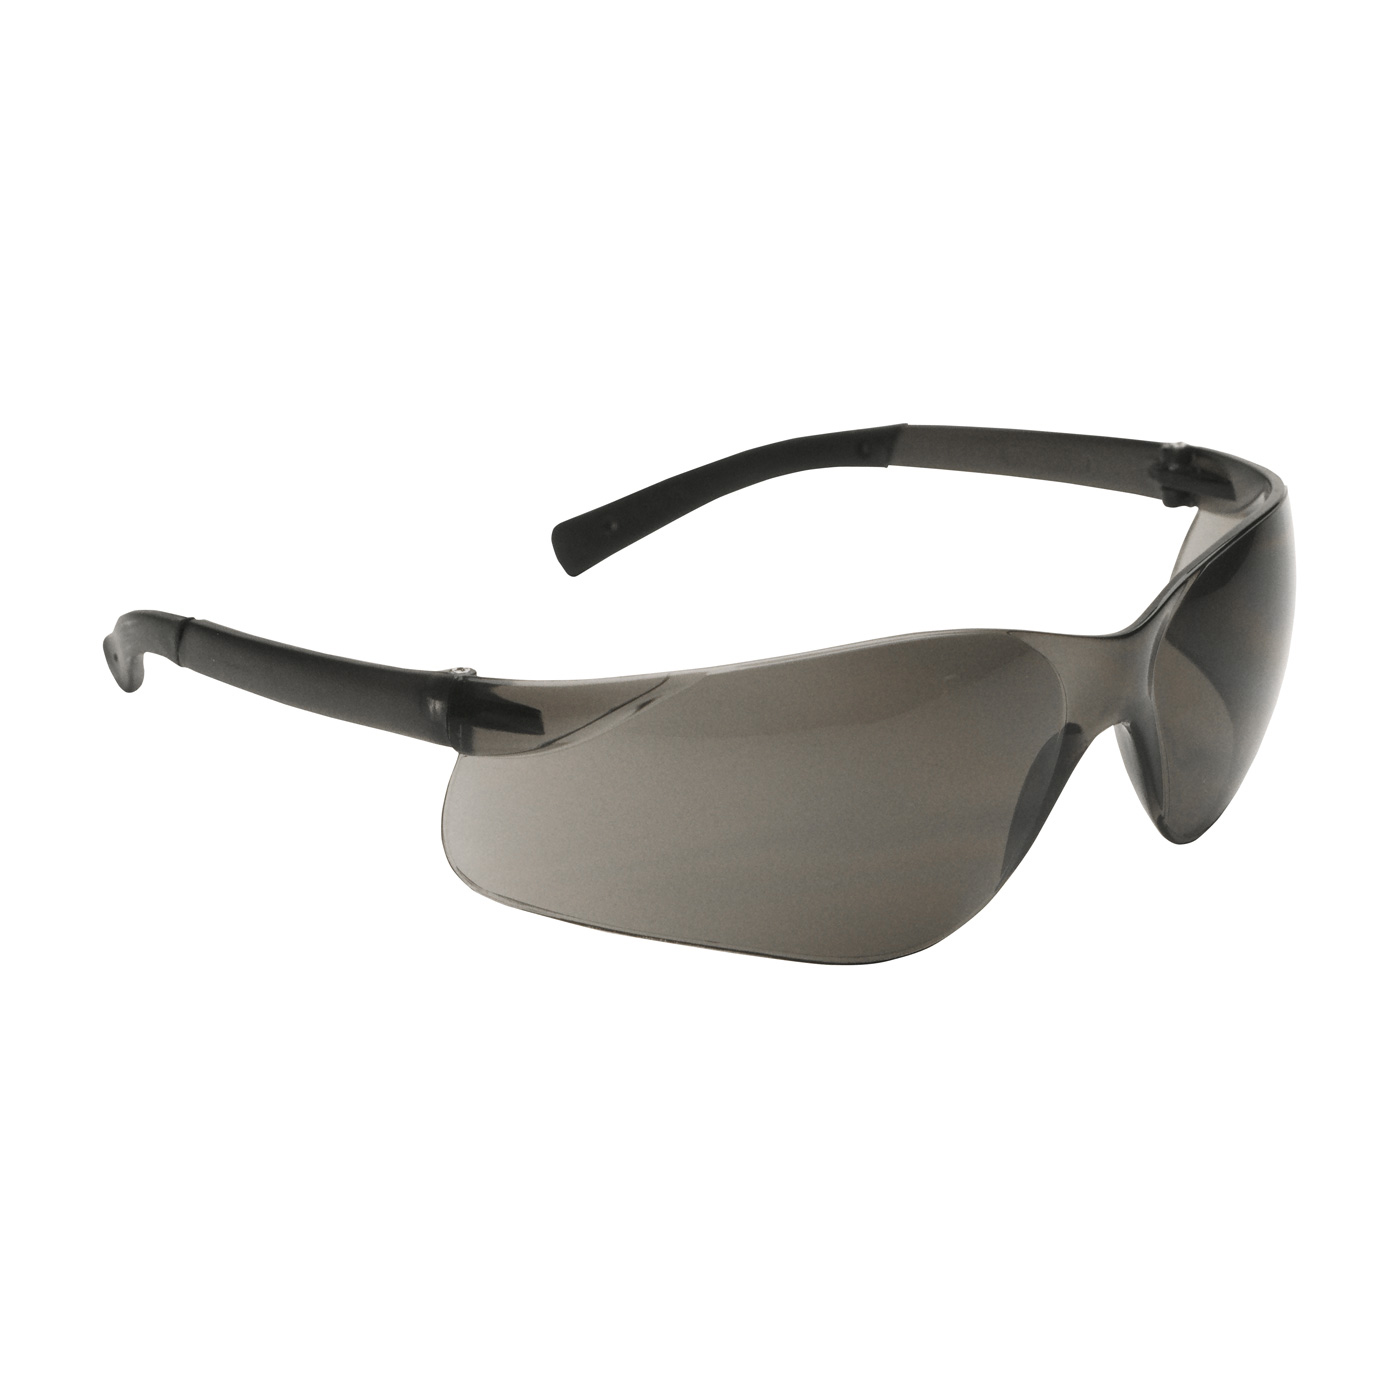 Zenon Z13 Rimless Safety Glasses in Dark Gray